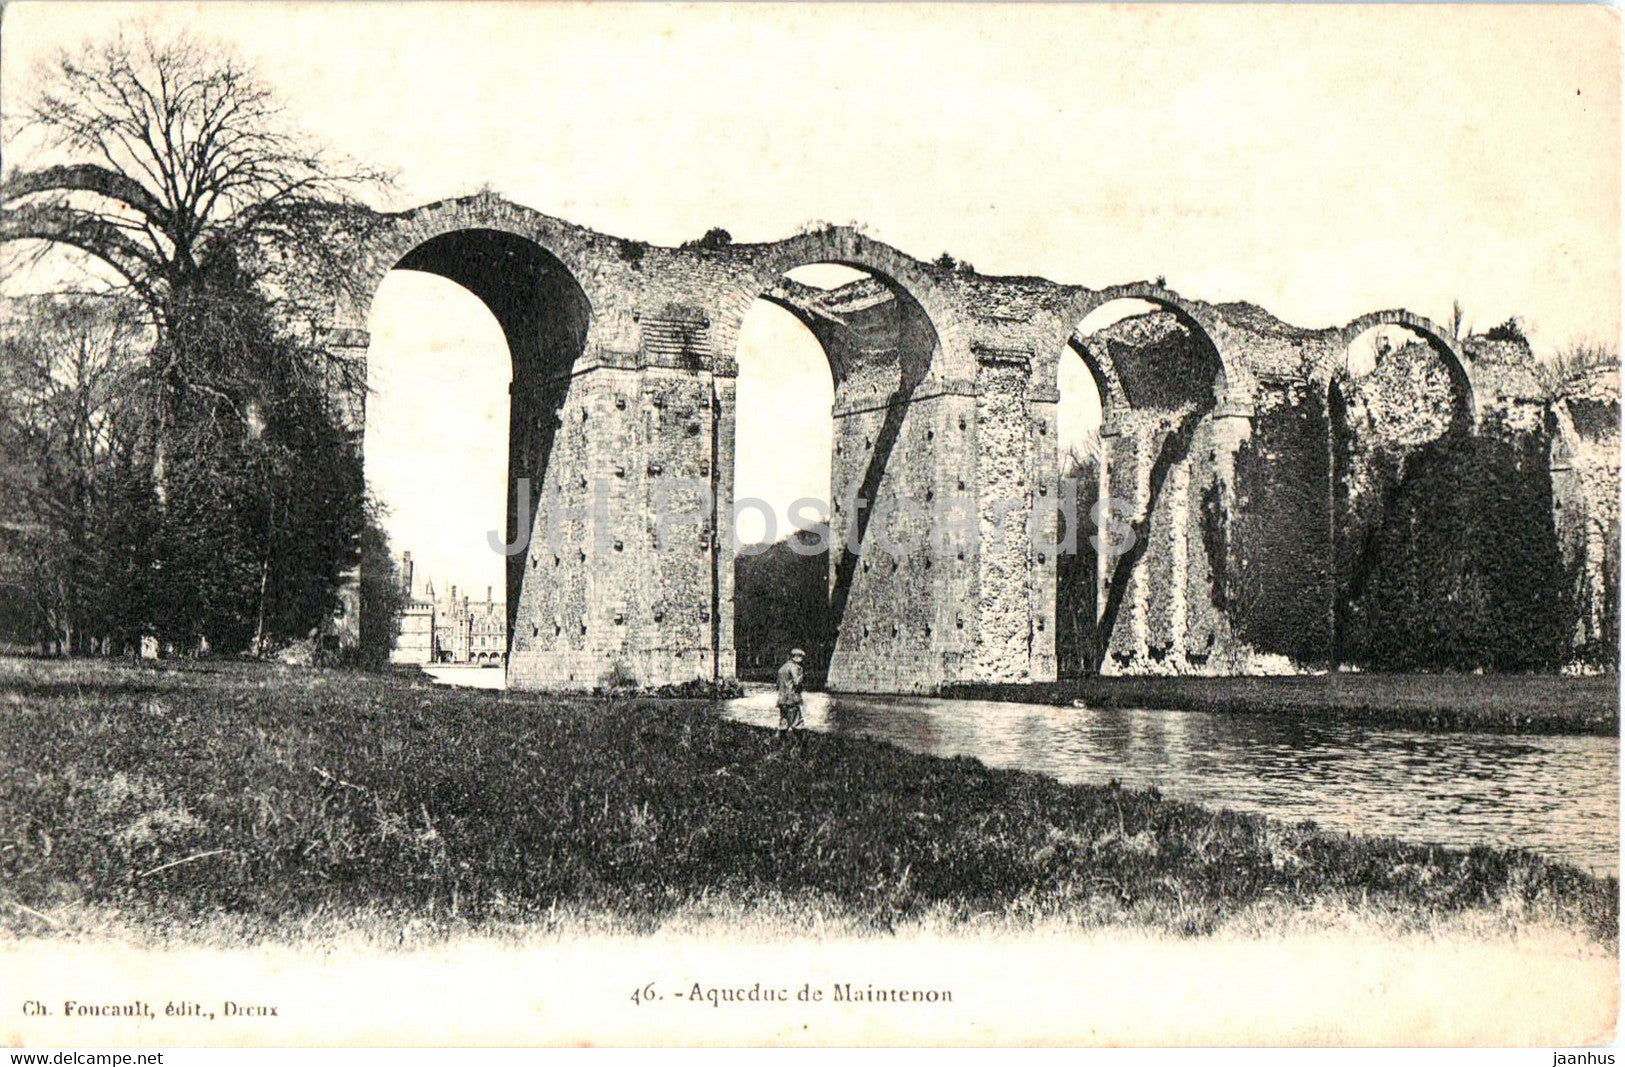 Aqueduc de Maintenon - ancient world - 46 - old postcard - France - unused - JH Postcards